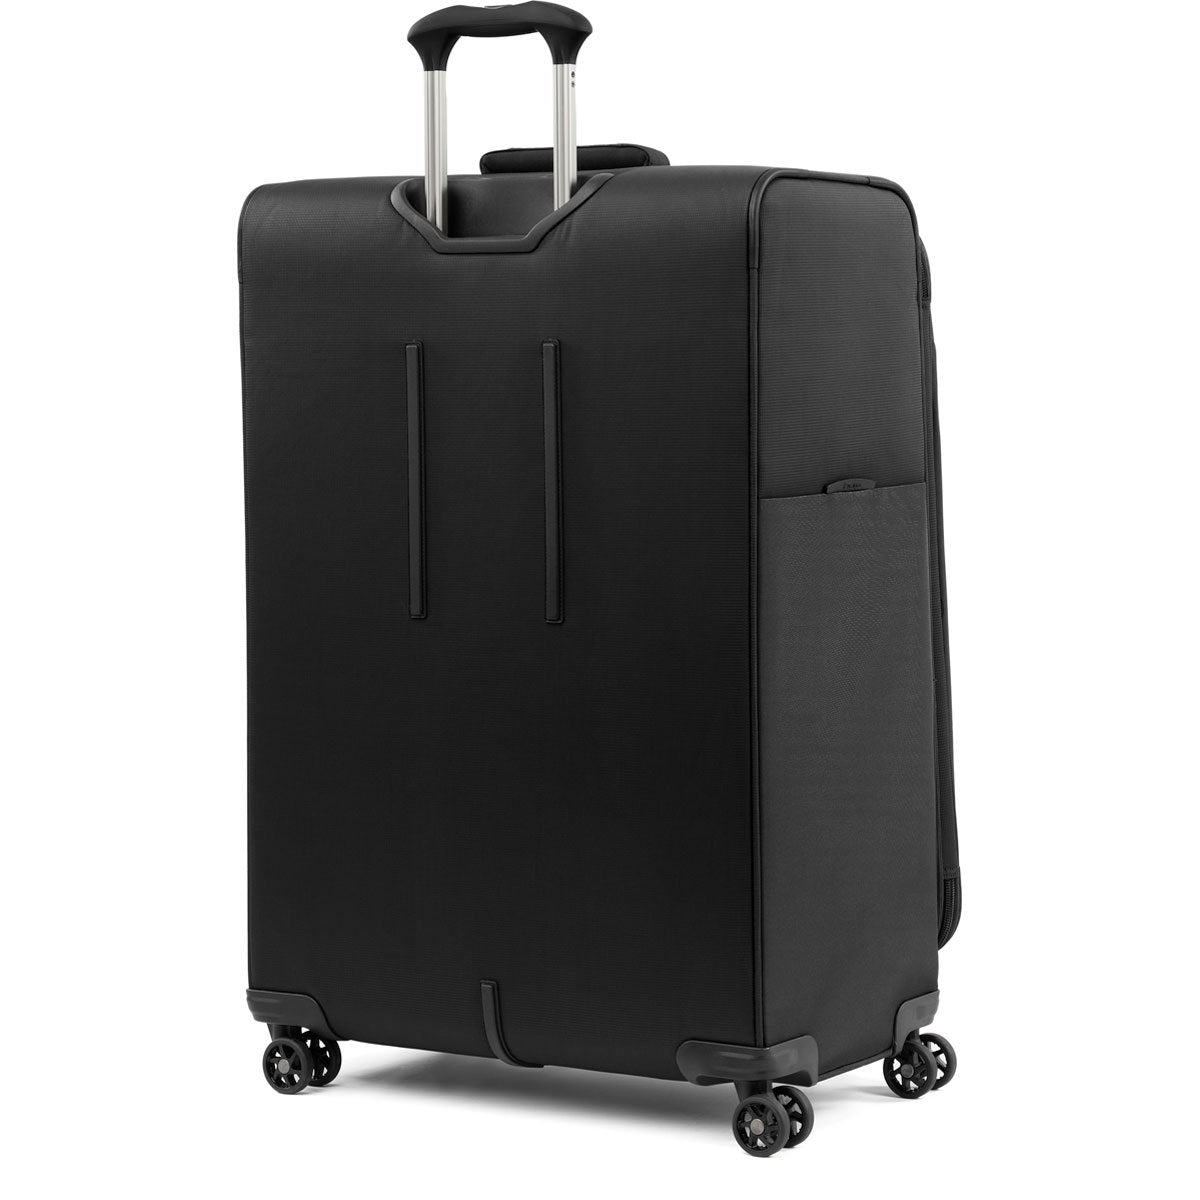 Travelpro Tourlite Softside Luggage (LARGE)